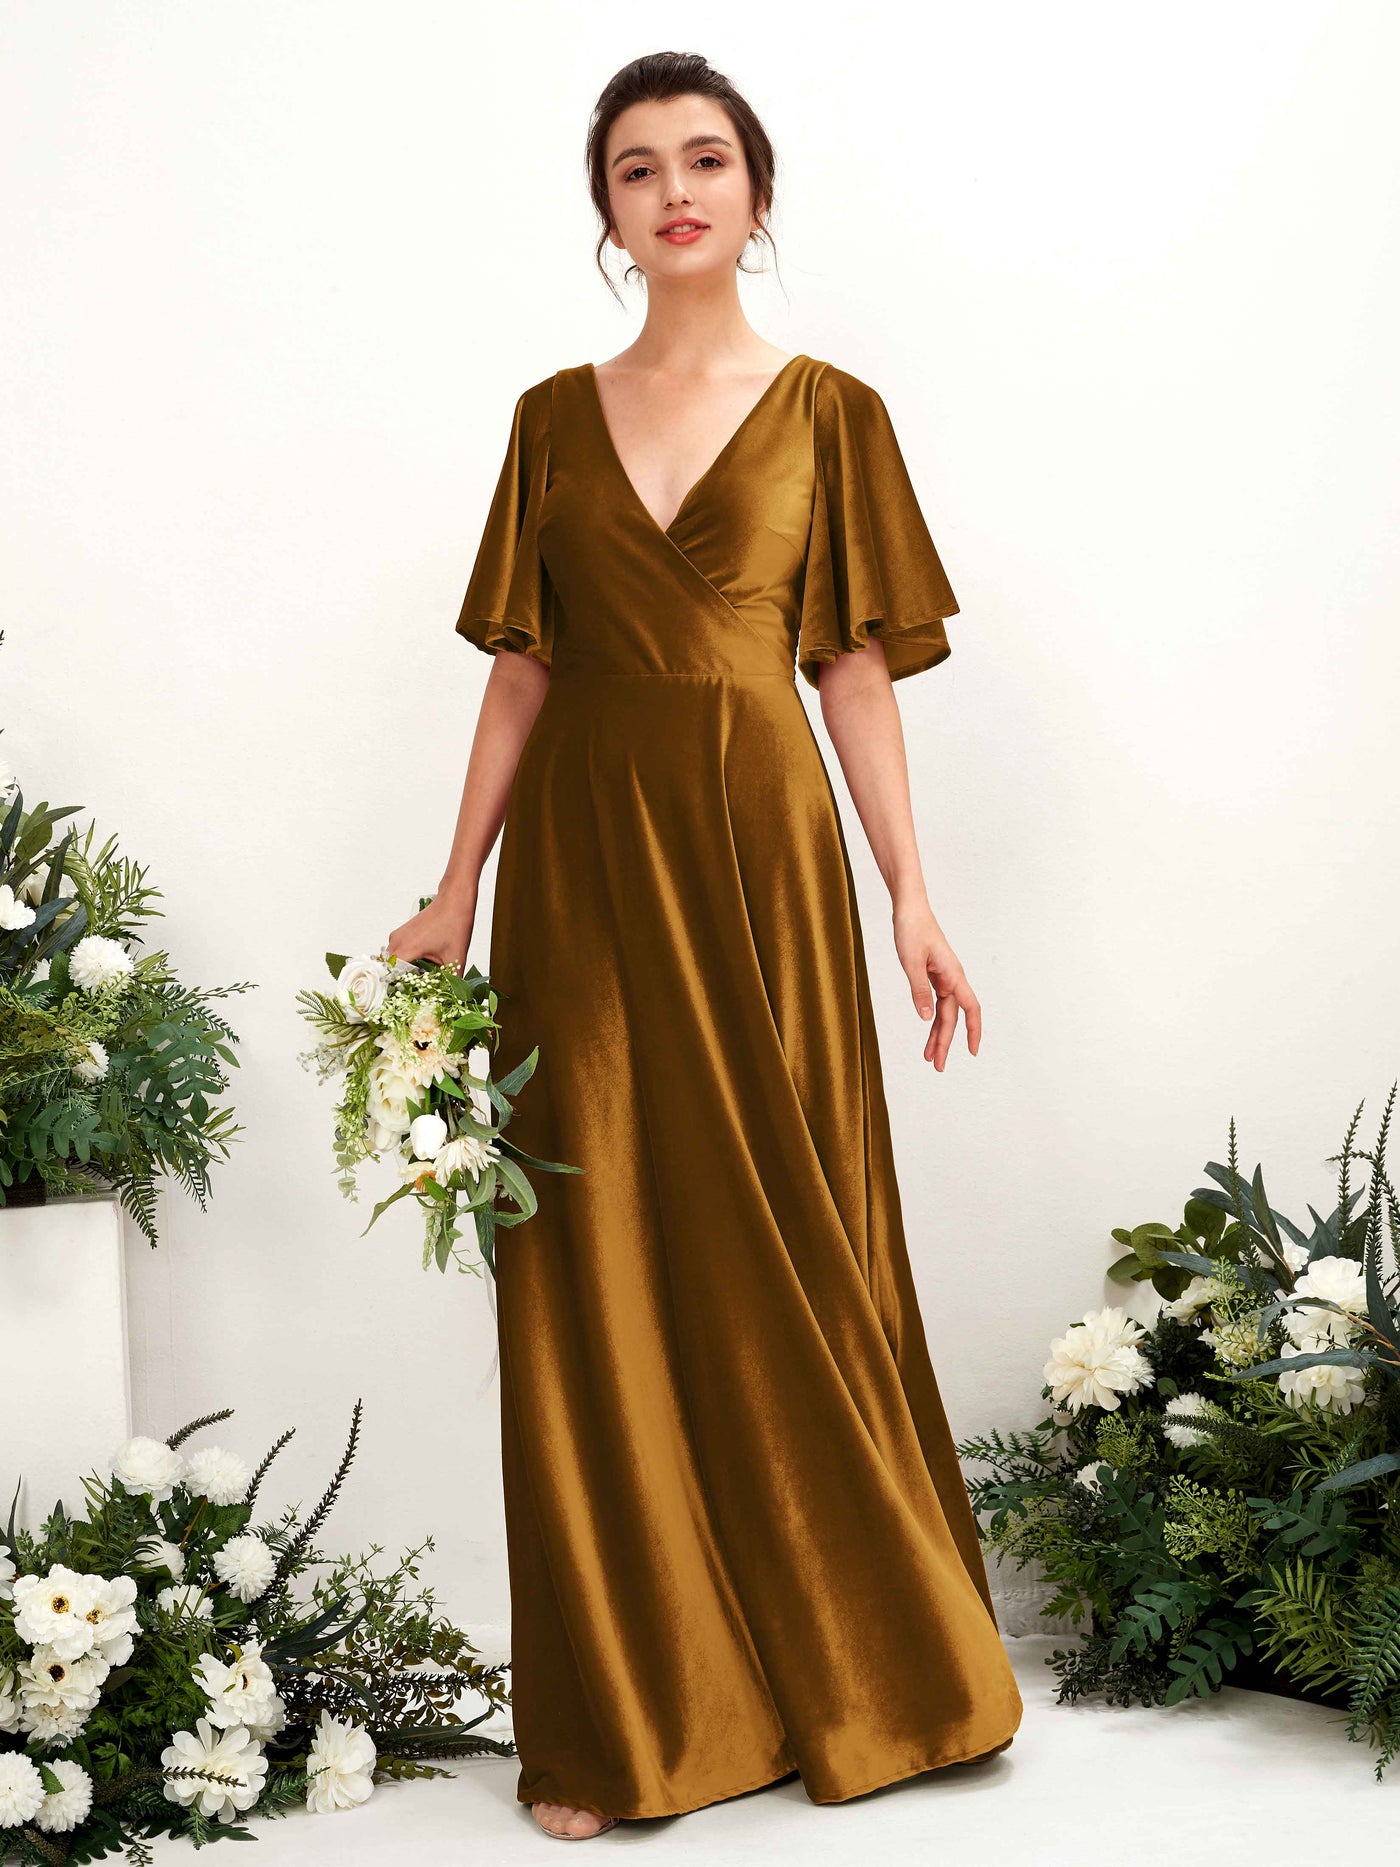 Burnished Gold Bridesmaid Dresses Bridesmaid Dress A-line Velvet V-neck Full Length Short Sleeves Wedding Party Dress (80224016)#color_burnished-gold